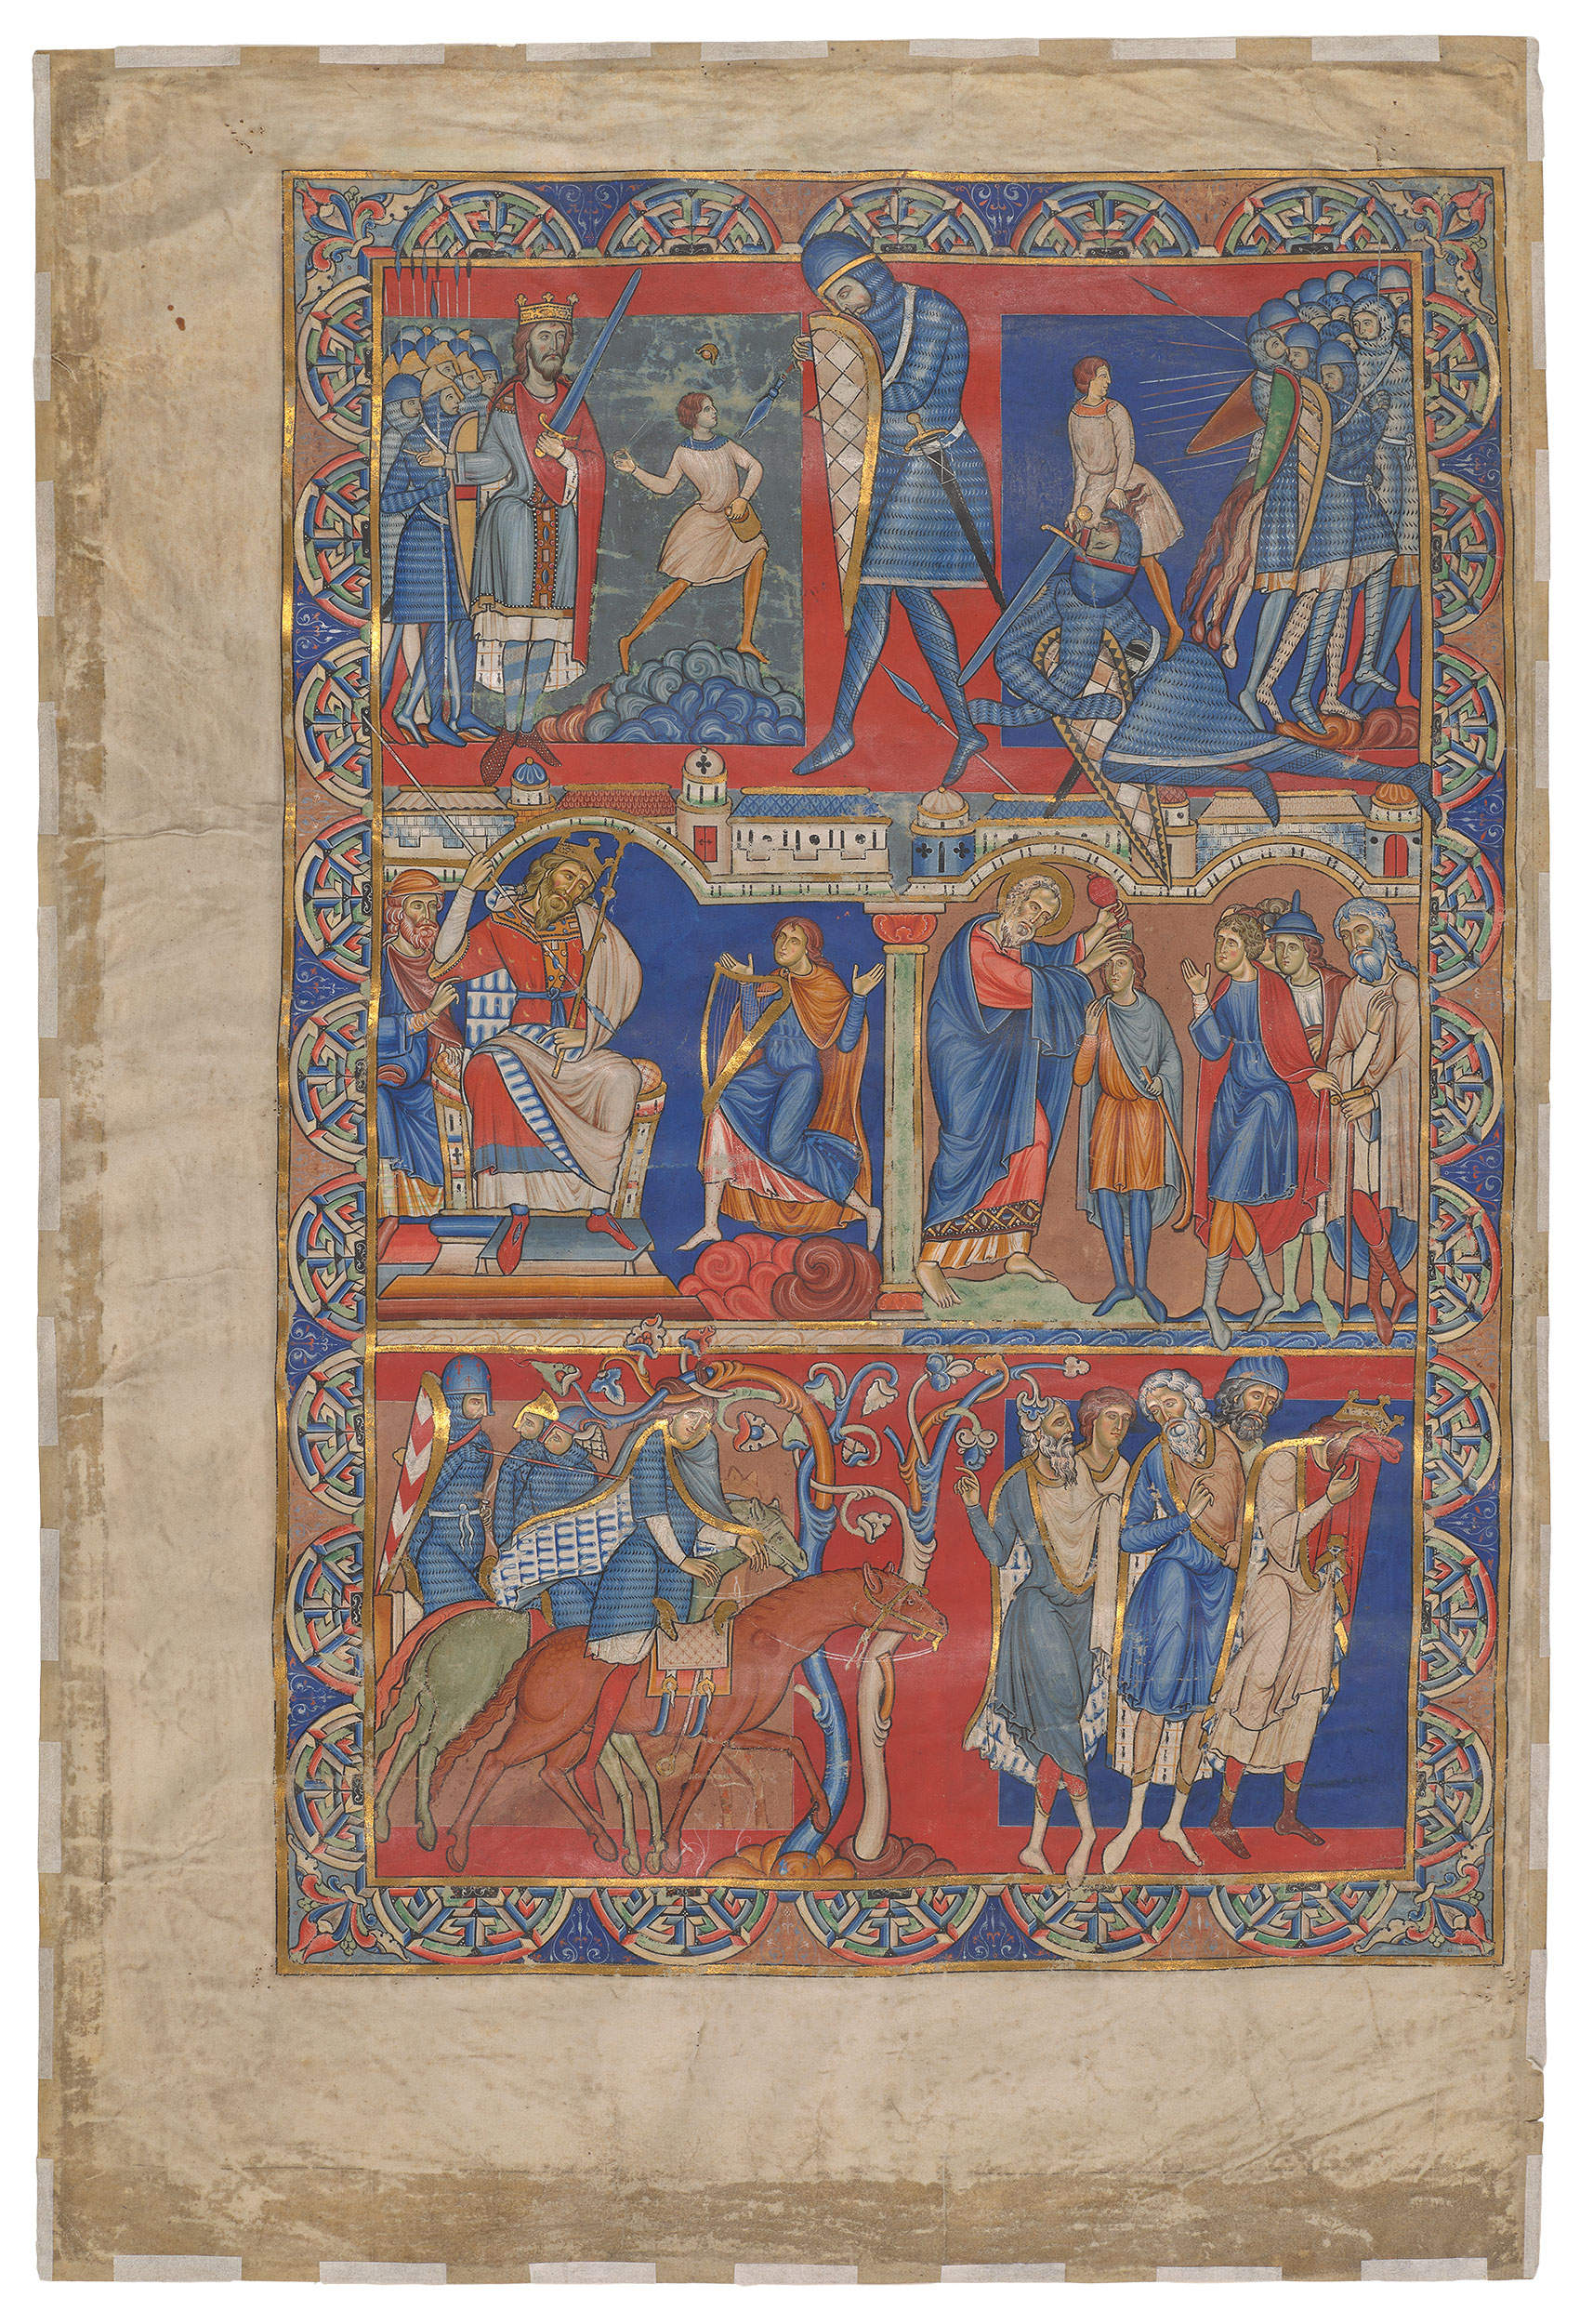 Μονή σελίδα από το βιβλίο του Σαμουήλ, Βίβλος του Γουίντσεστερ by Άγνωστος Καλ - c. 1160 – 1180 - 580 x 390 mm 